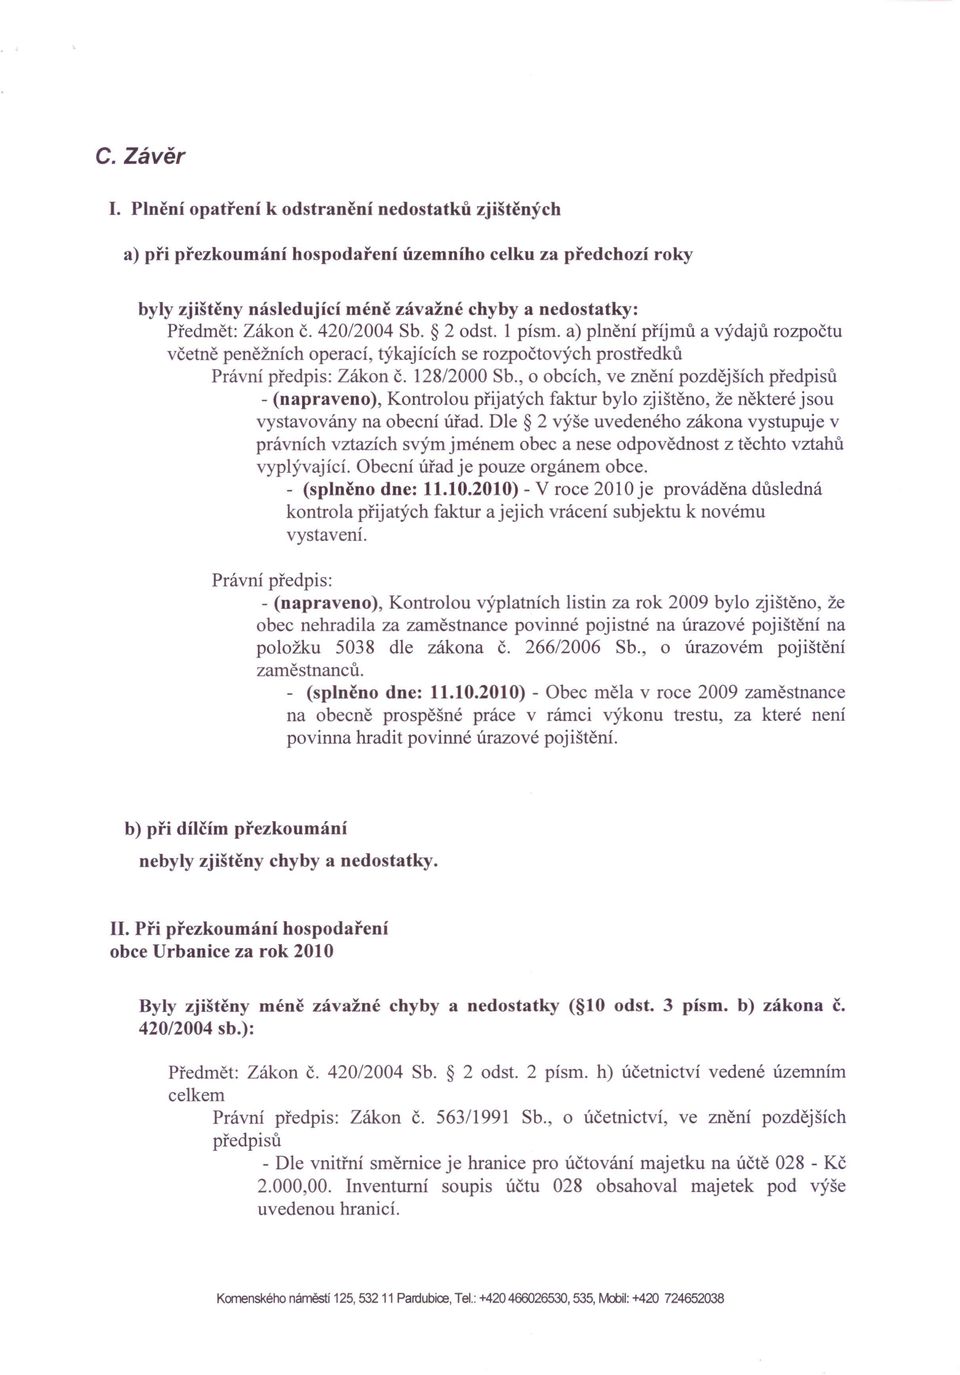 42012004 Sb. 2 odst. 1 písmo a) plnění příjmů a výdajů rozpočtu včetně peněžních operací, týkajících se rozpočtových prostředků Právní předpis: Zákon č. 12812000 Sb.